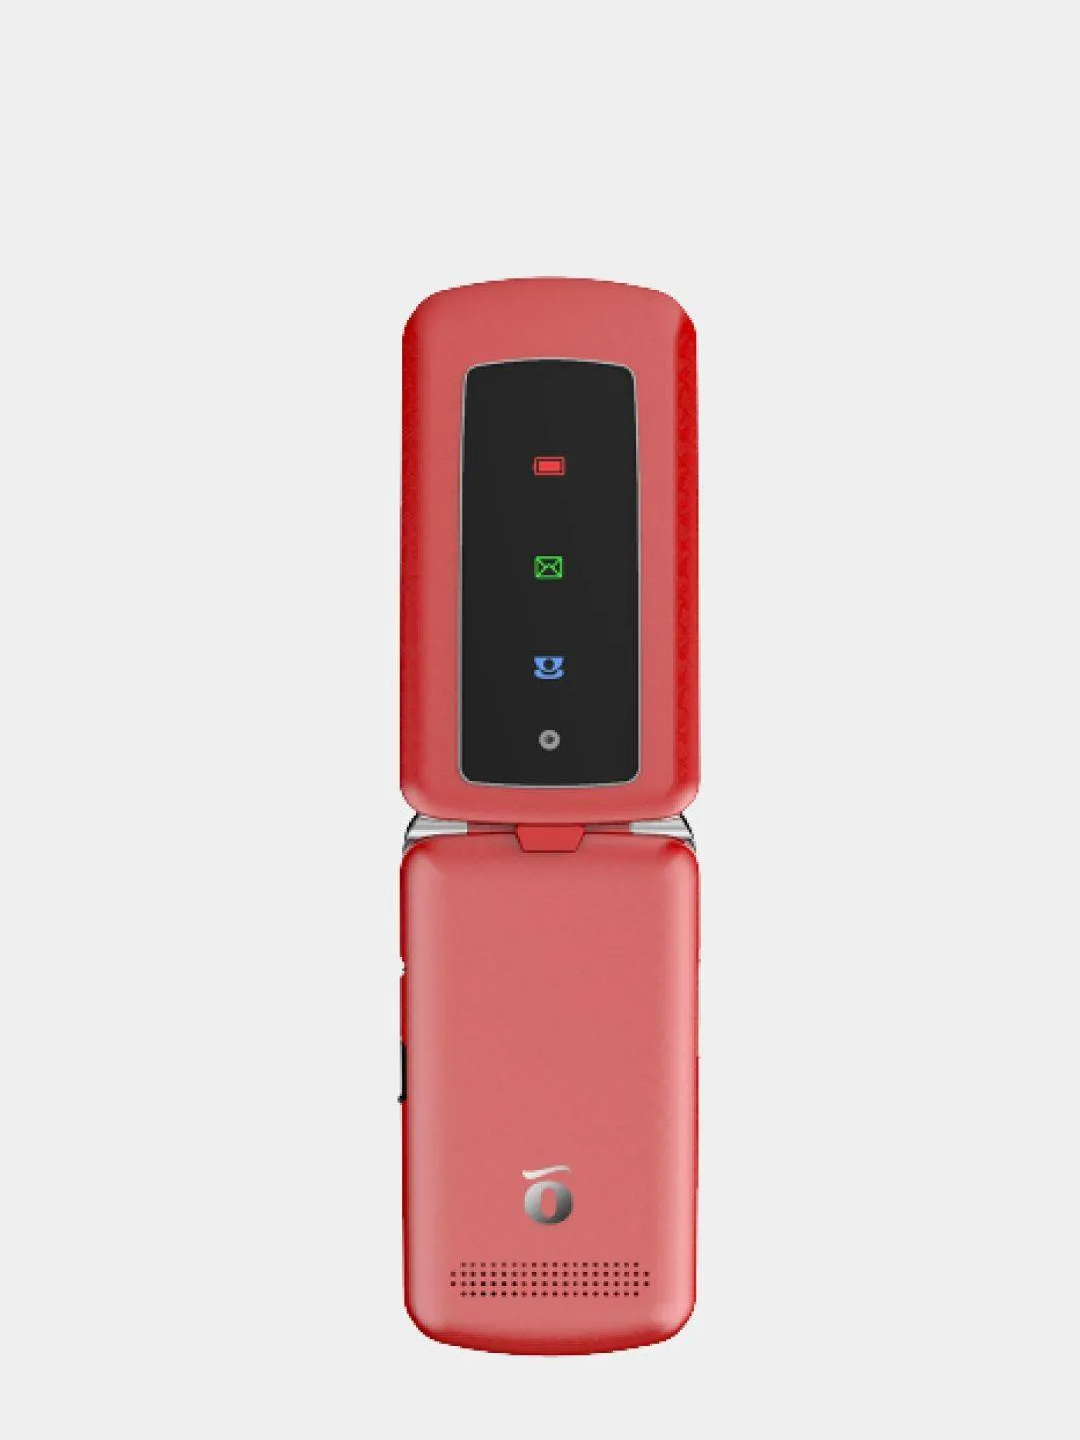 Телефон раскладушка красный. Телефон Olmio f28. Сотовый телефон Olmio f28 Red. Телефон Olmio f28, красный. Телефон Olmio f28 (Red).